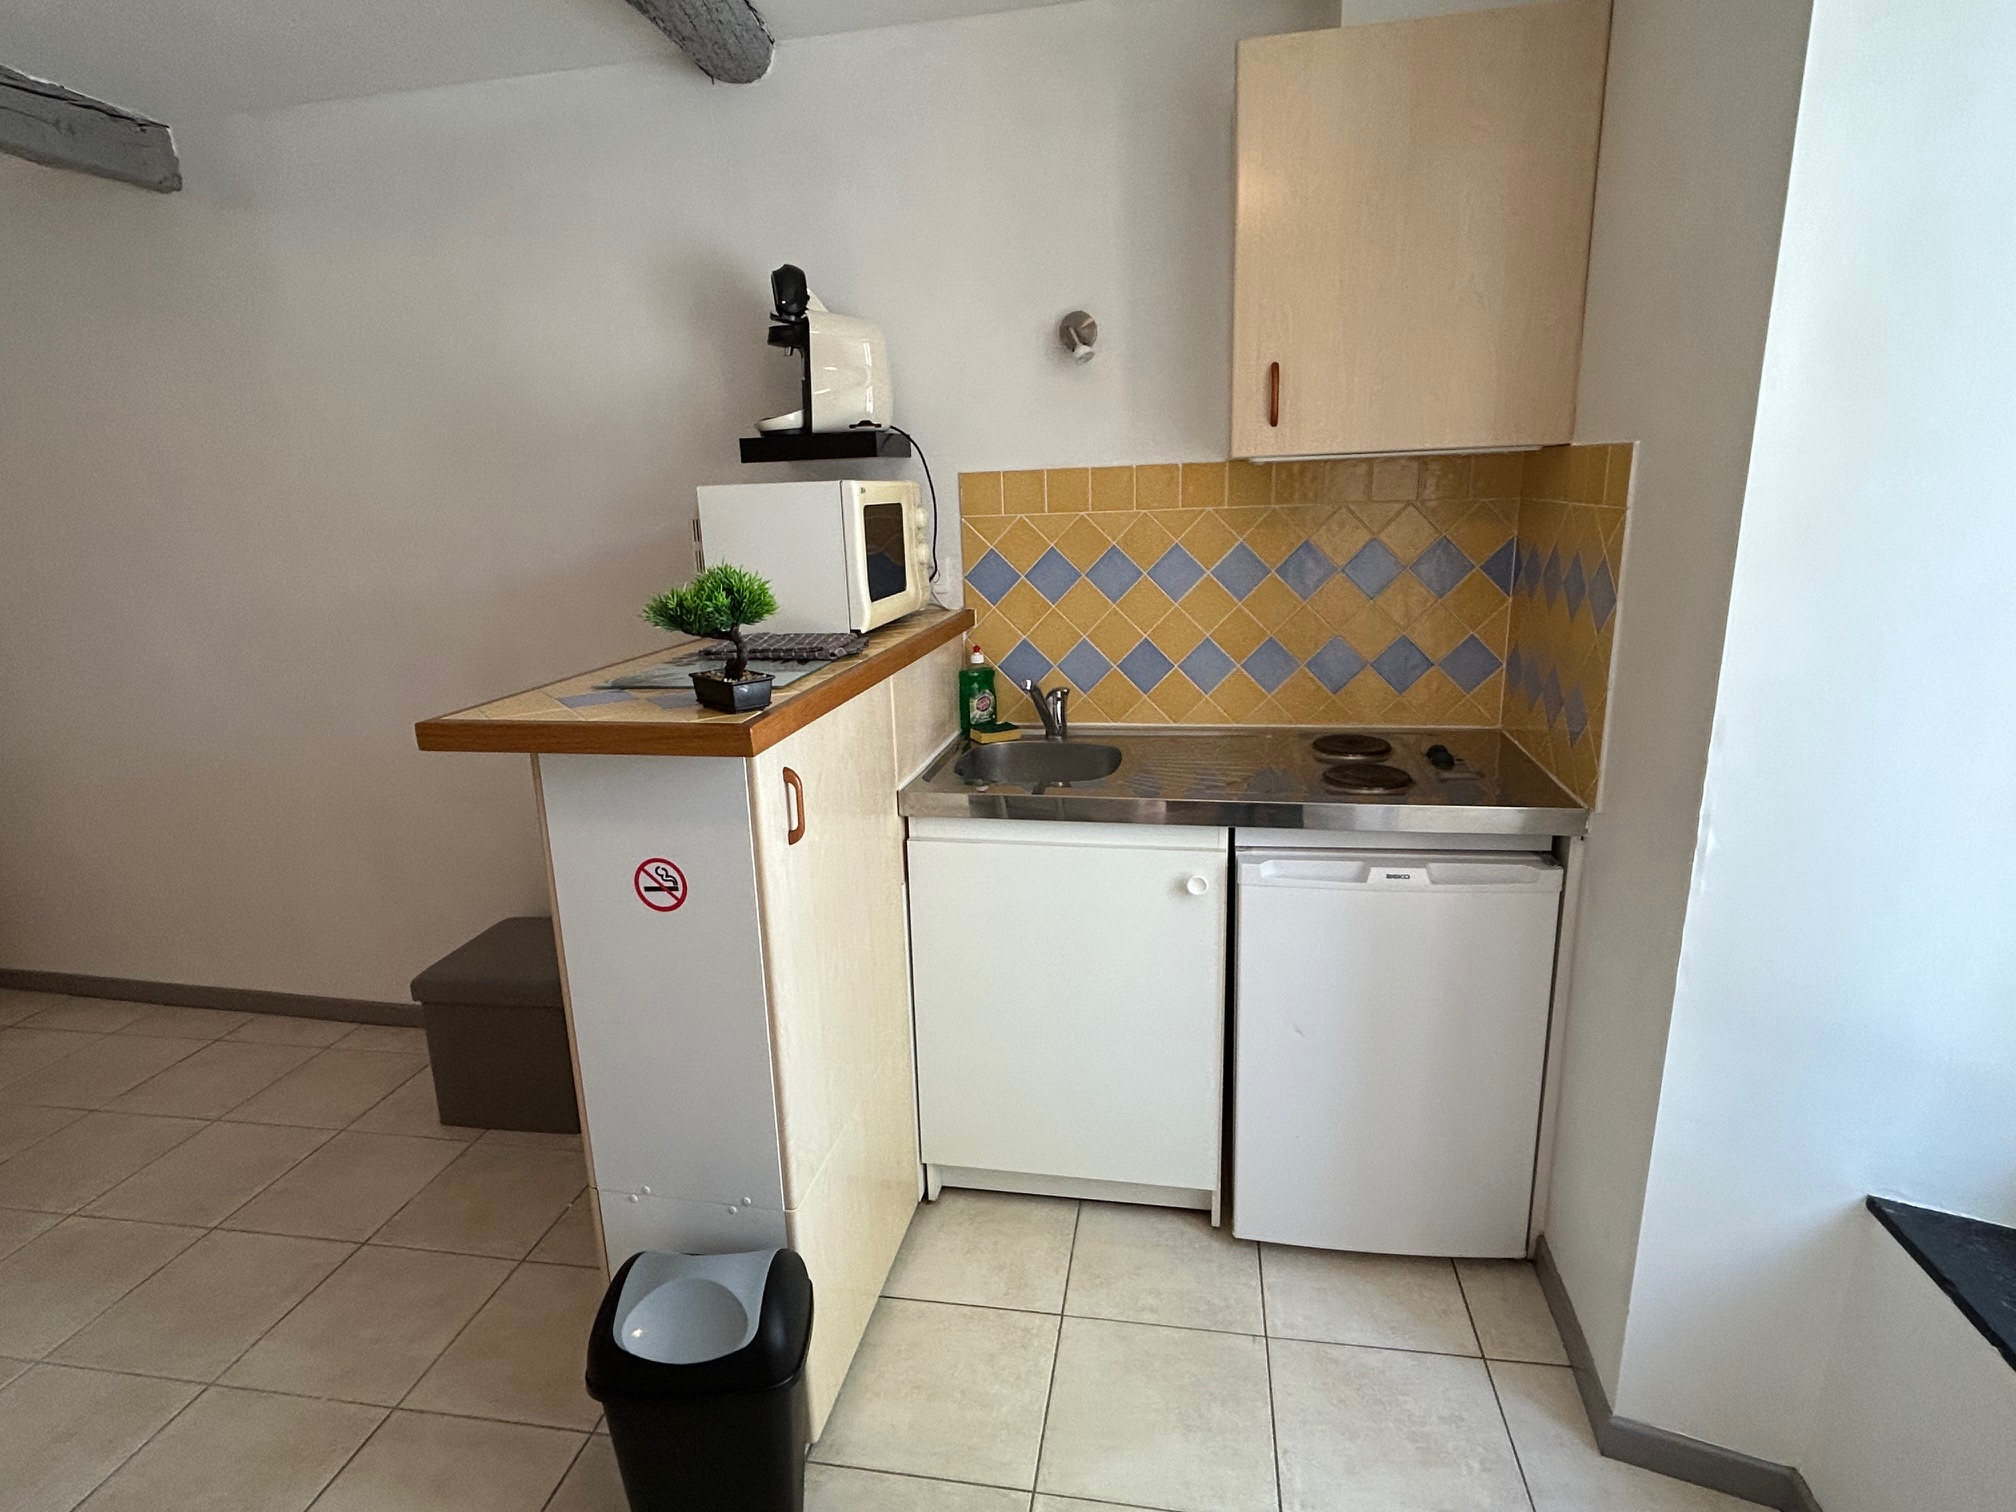 Appartement Appartement Lézignan-Corbières 530€ Grimois Immobilier